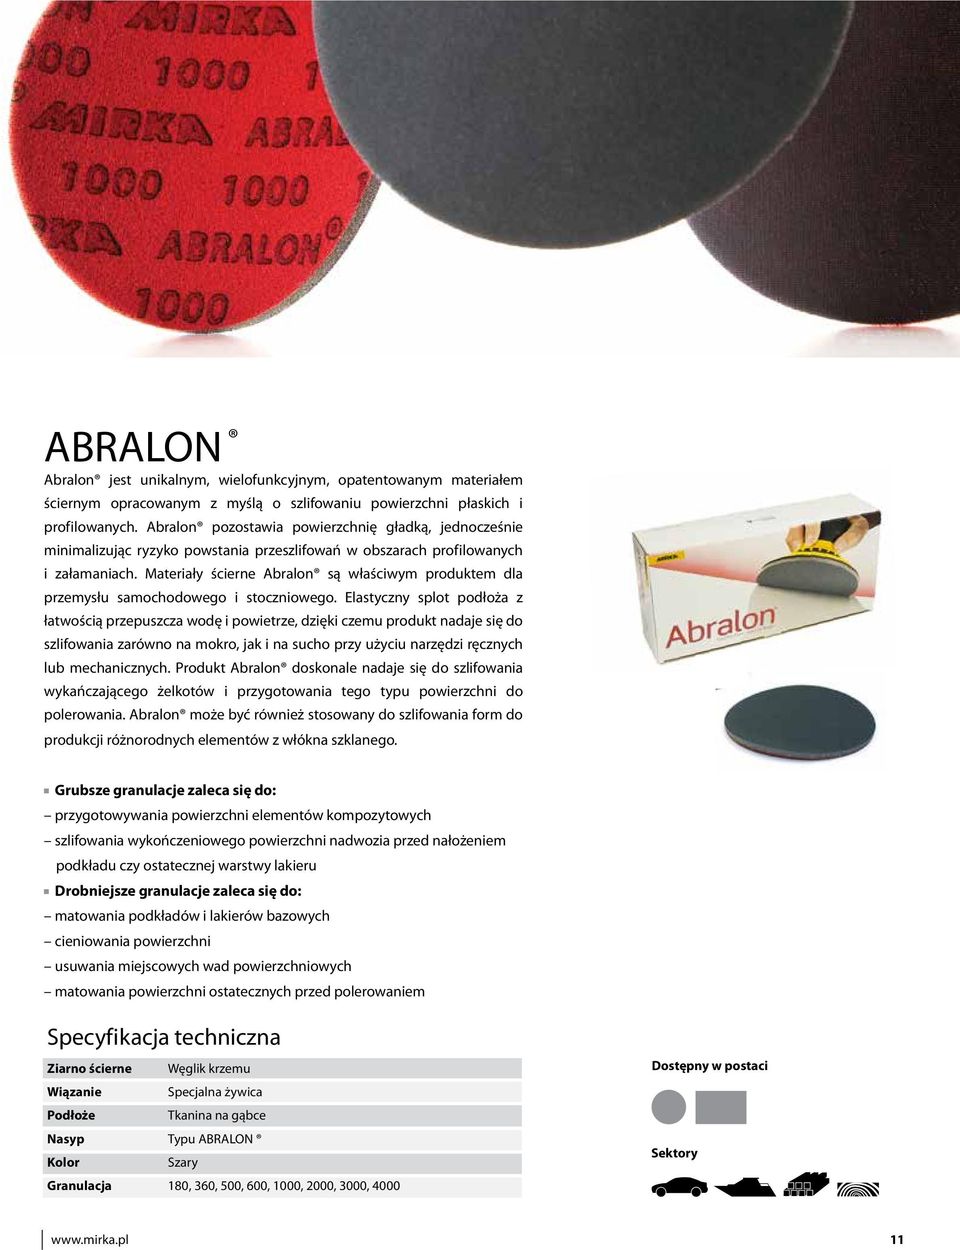 Materiały ścierne Abralon są właściwym produktem dla przemysłu samochodowego i stoczniowego.